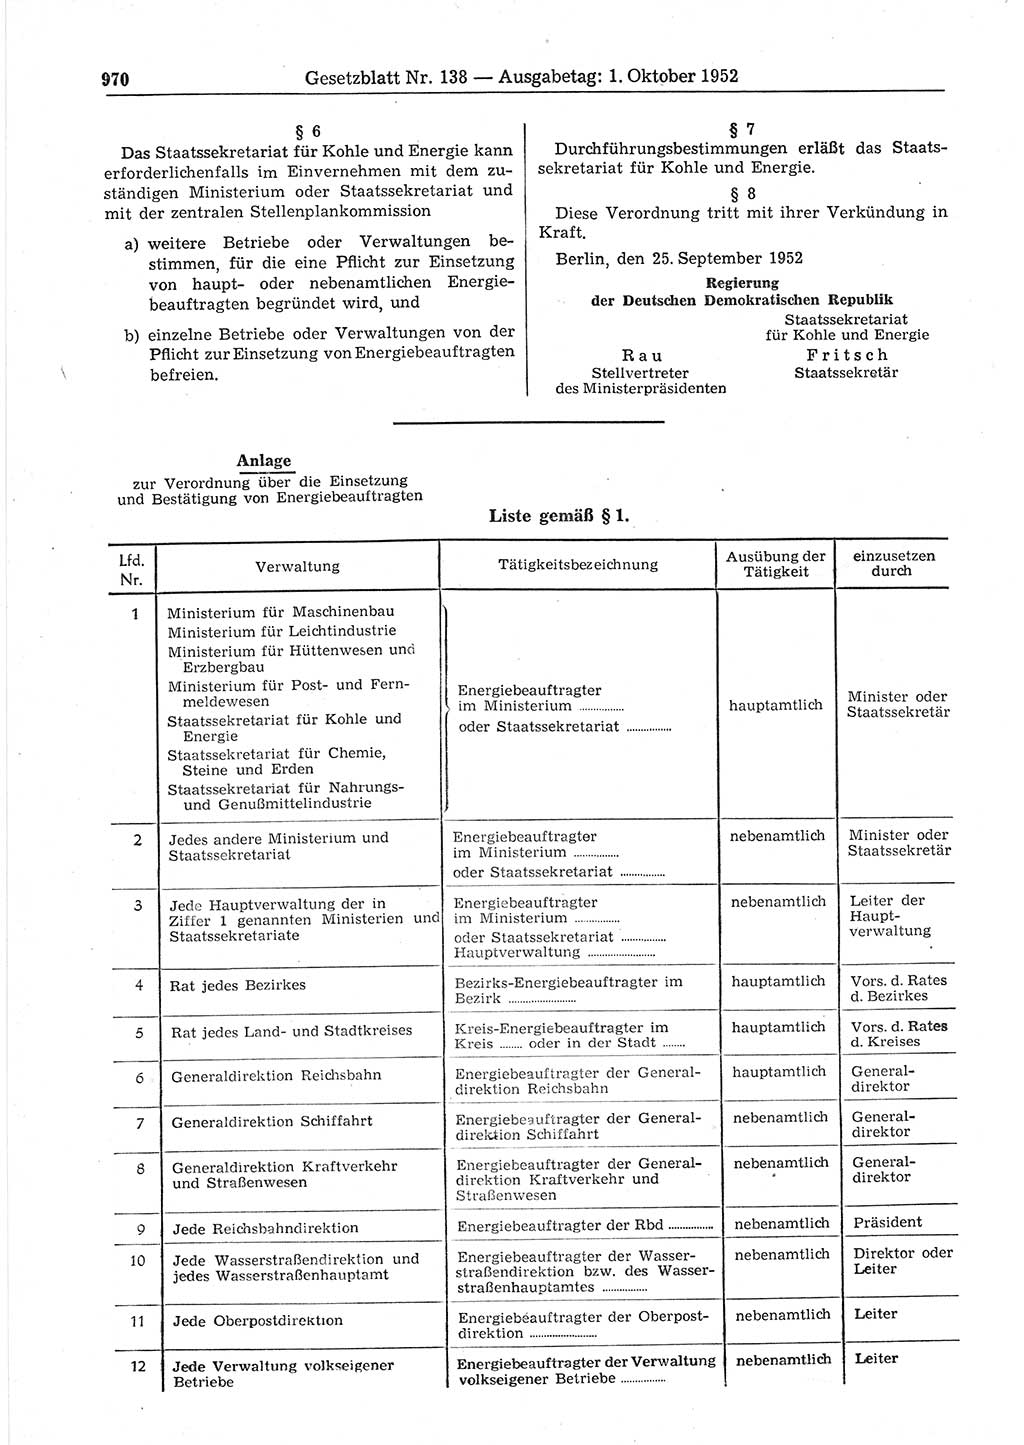 Gesetzblatt (GBl.) der Deutschen Demokratischen Republik (DDR) 1952, Seite 970 (GBl. DDR 1952, S. 970)